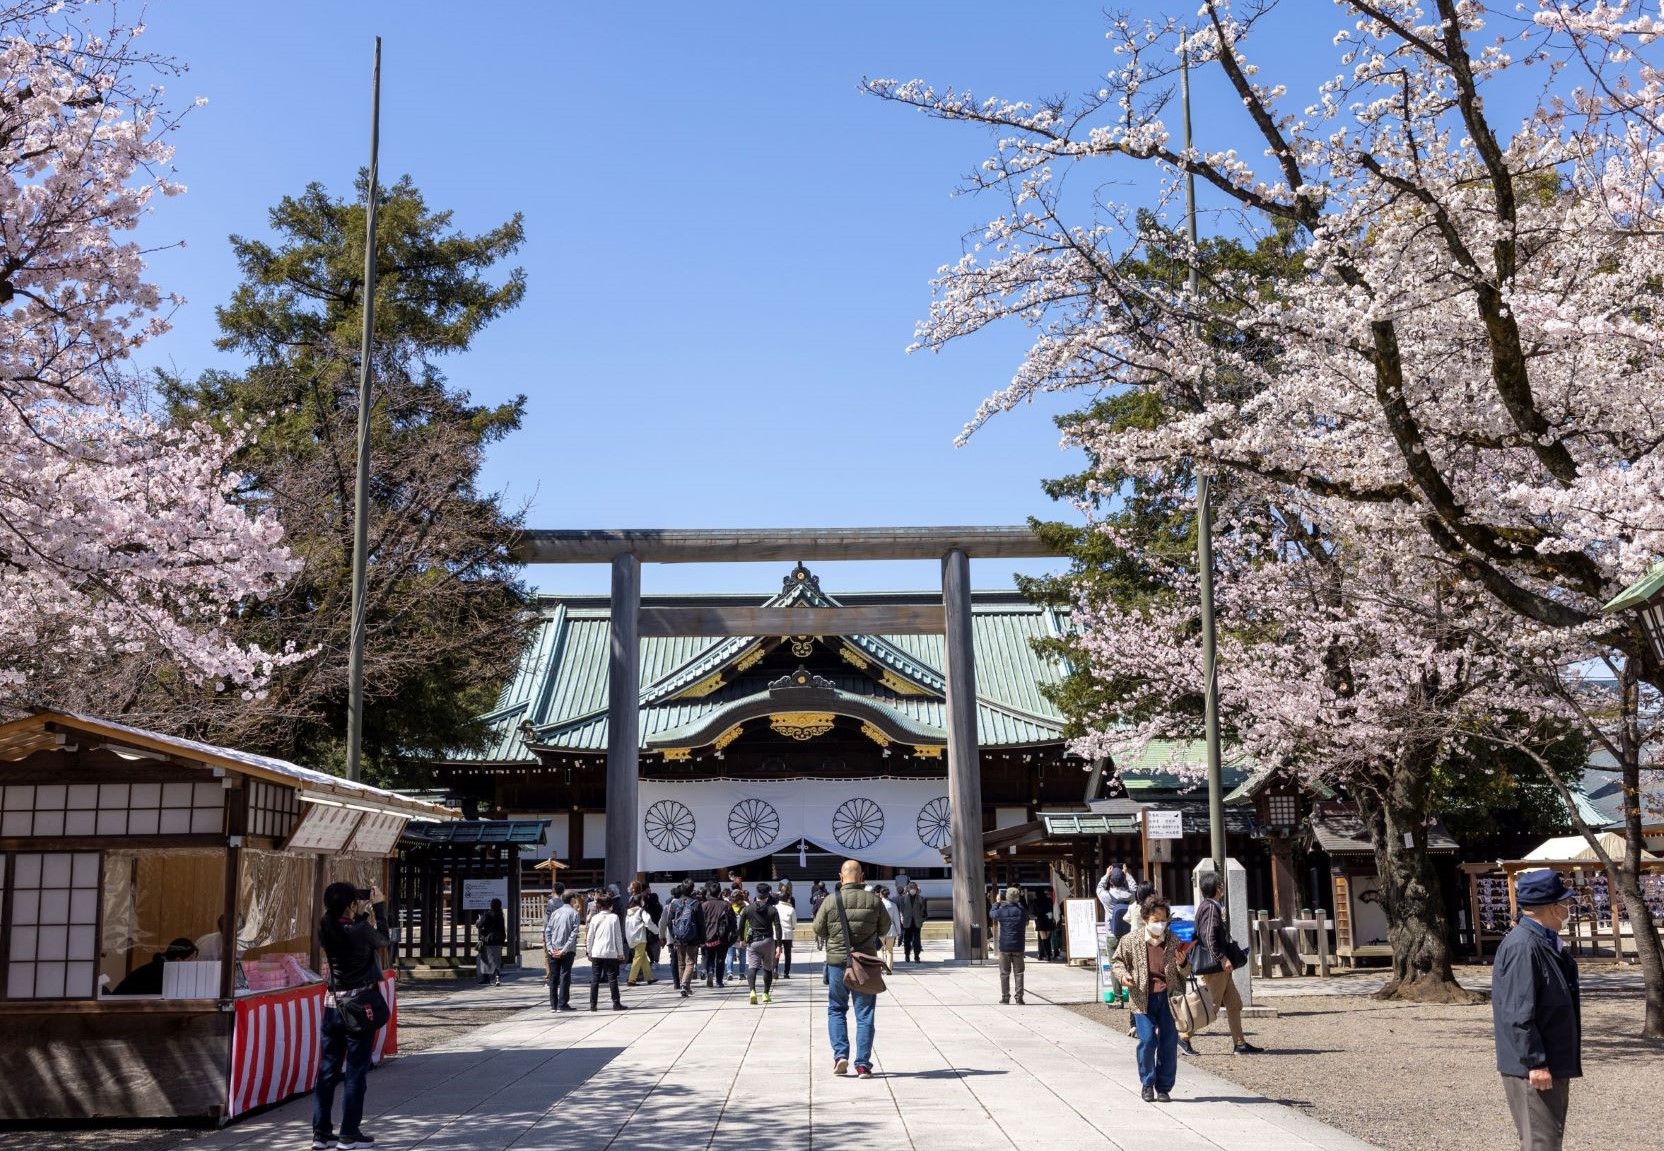 靖国神社 Yasukuni Shrine | 東京観光をタクシーで楽しむためのポータルサイト | TokyoDrive